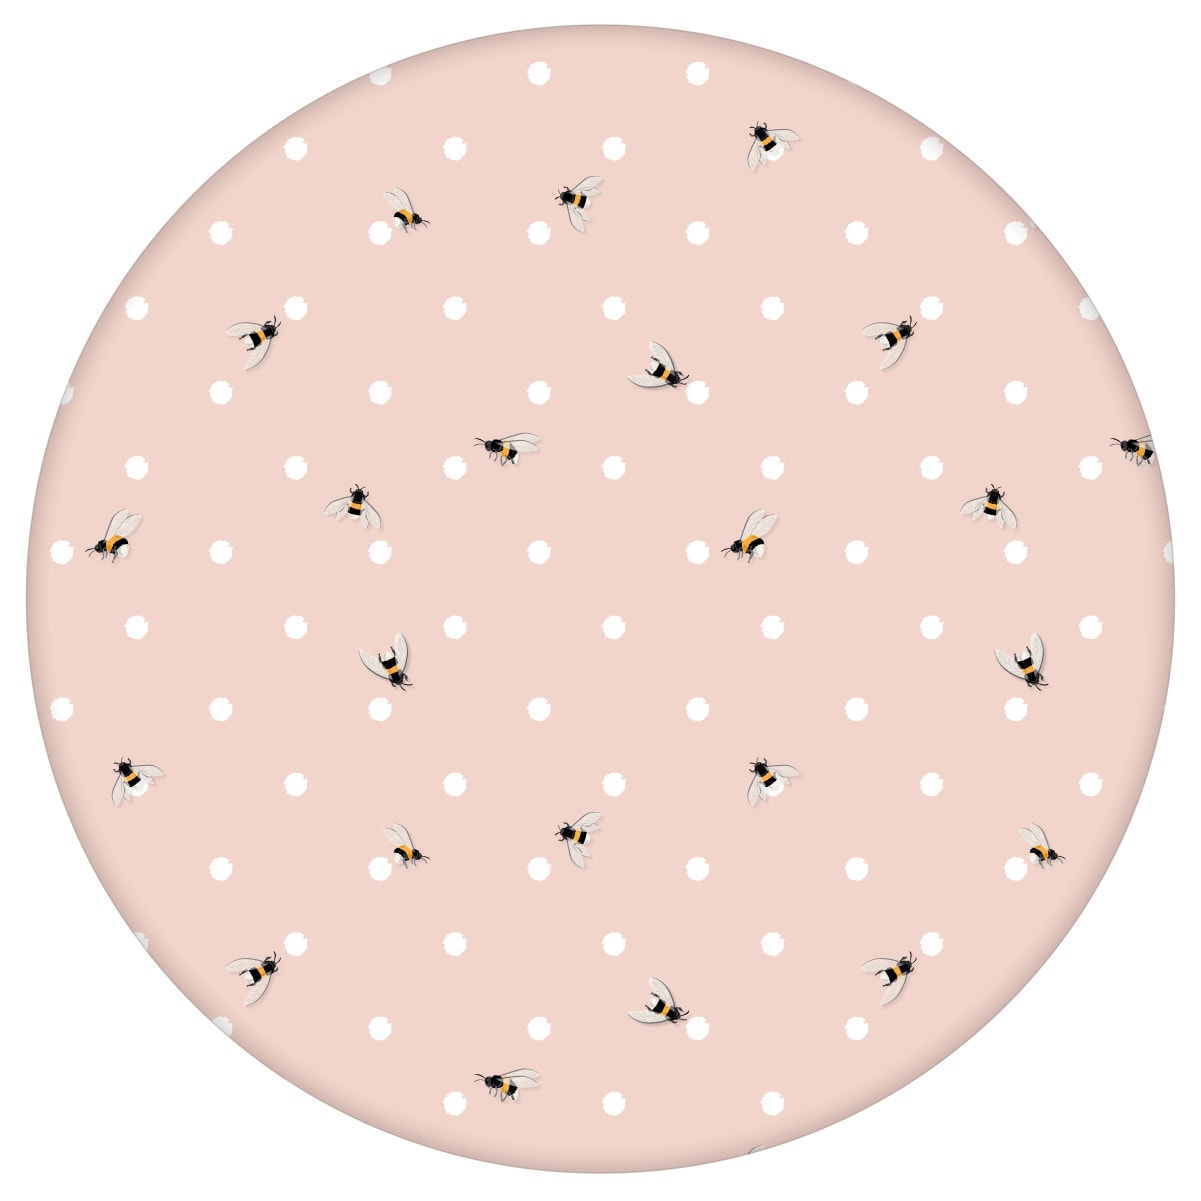 Polka Dot Tapete "Polka Bee" mit Bienen & Punkten, rosa Vlies-Tapete grafischer Wohnakzent für Wohnzimmer aus den Tapeten Neuheiten Exklusive Tapete für schönes Wohnen als Naturaltouch Luxus Vliestapete oder Basic Vliestapete